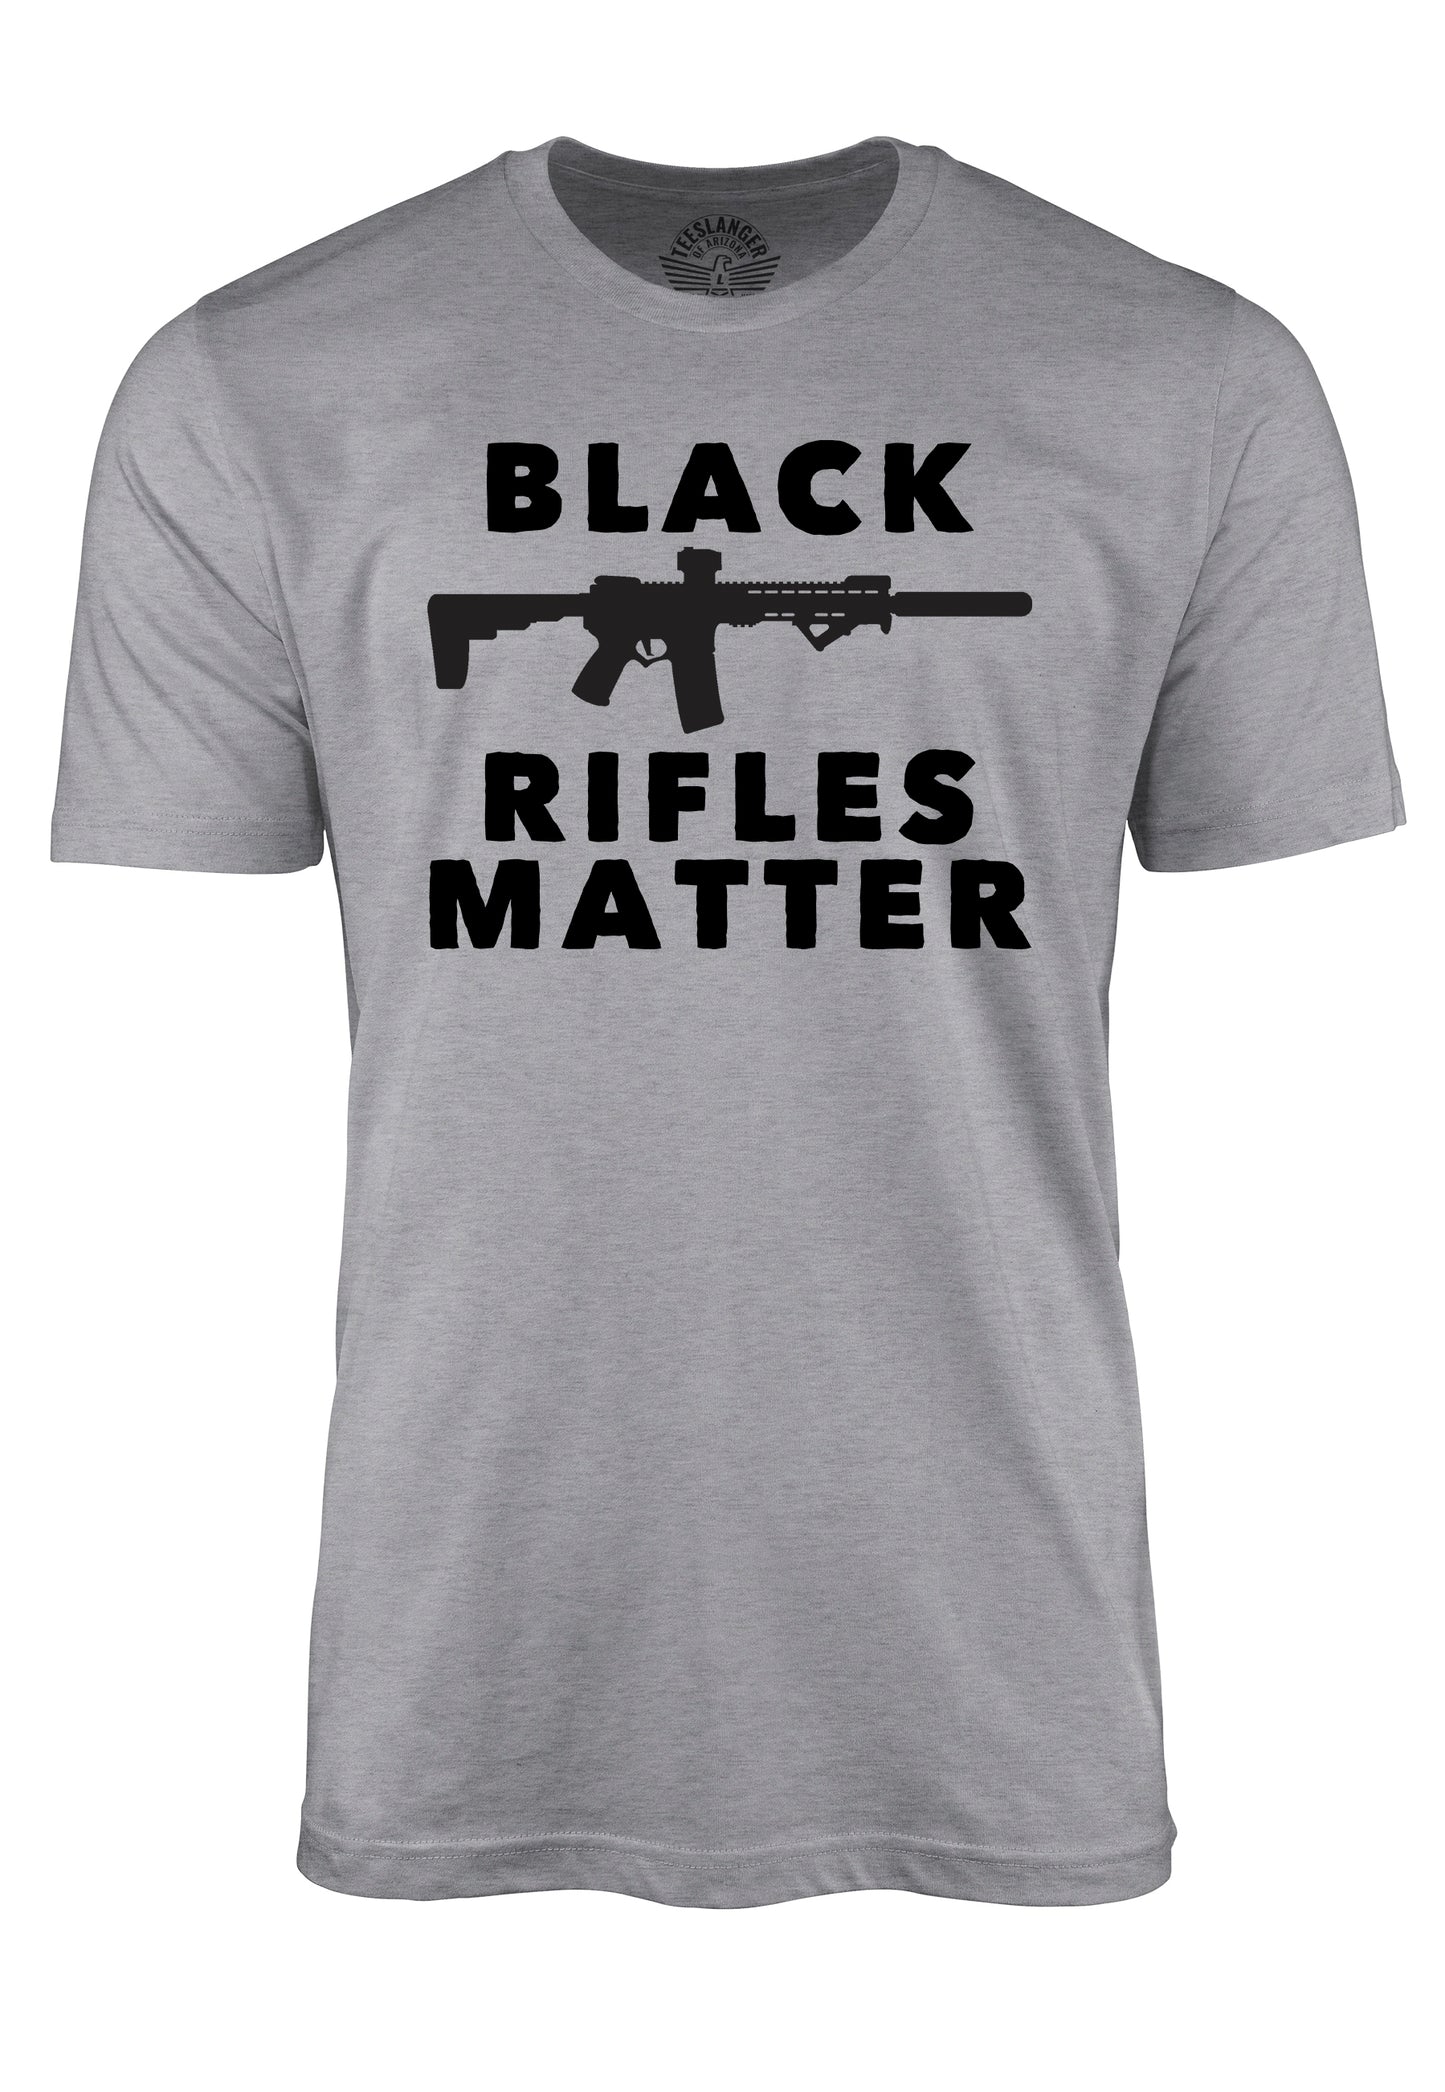 All Rifles Matter tee